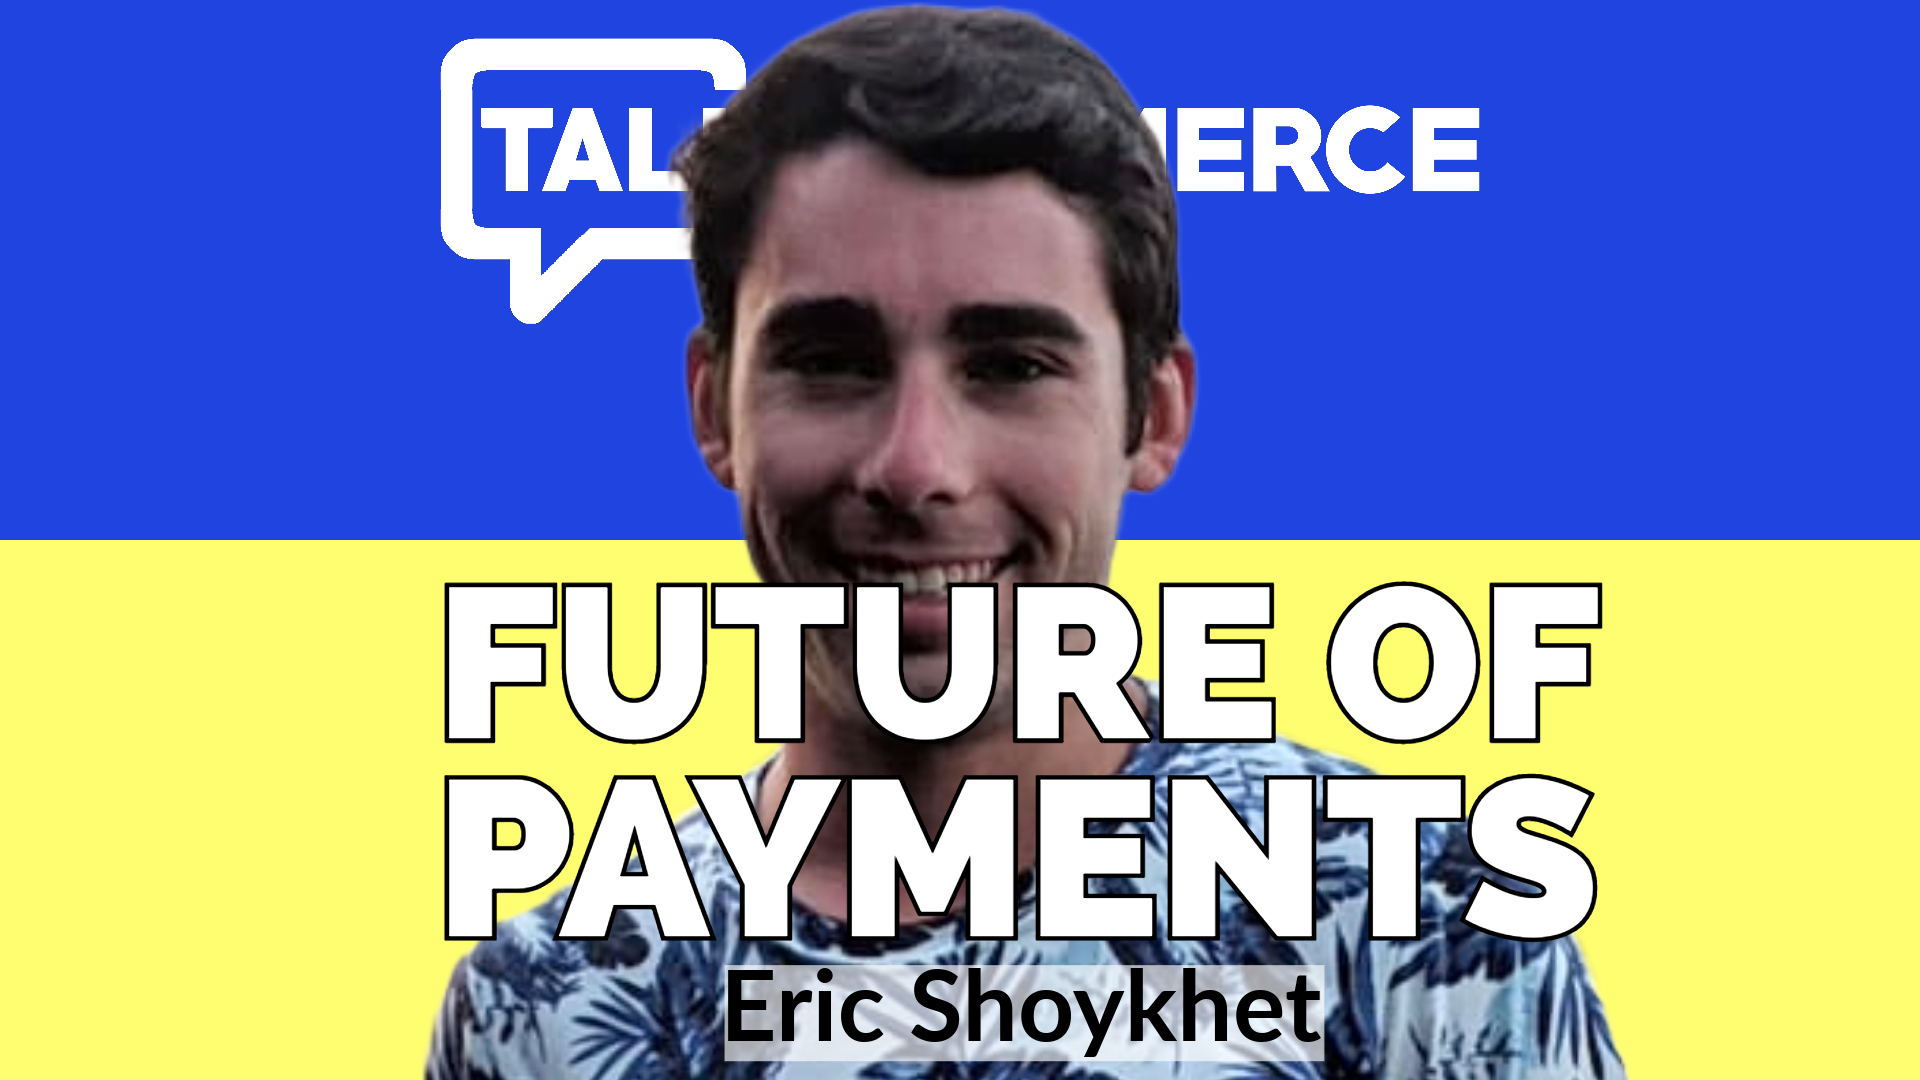 Talk-Commerce Eric Shoykhet